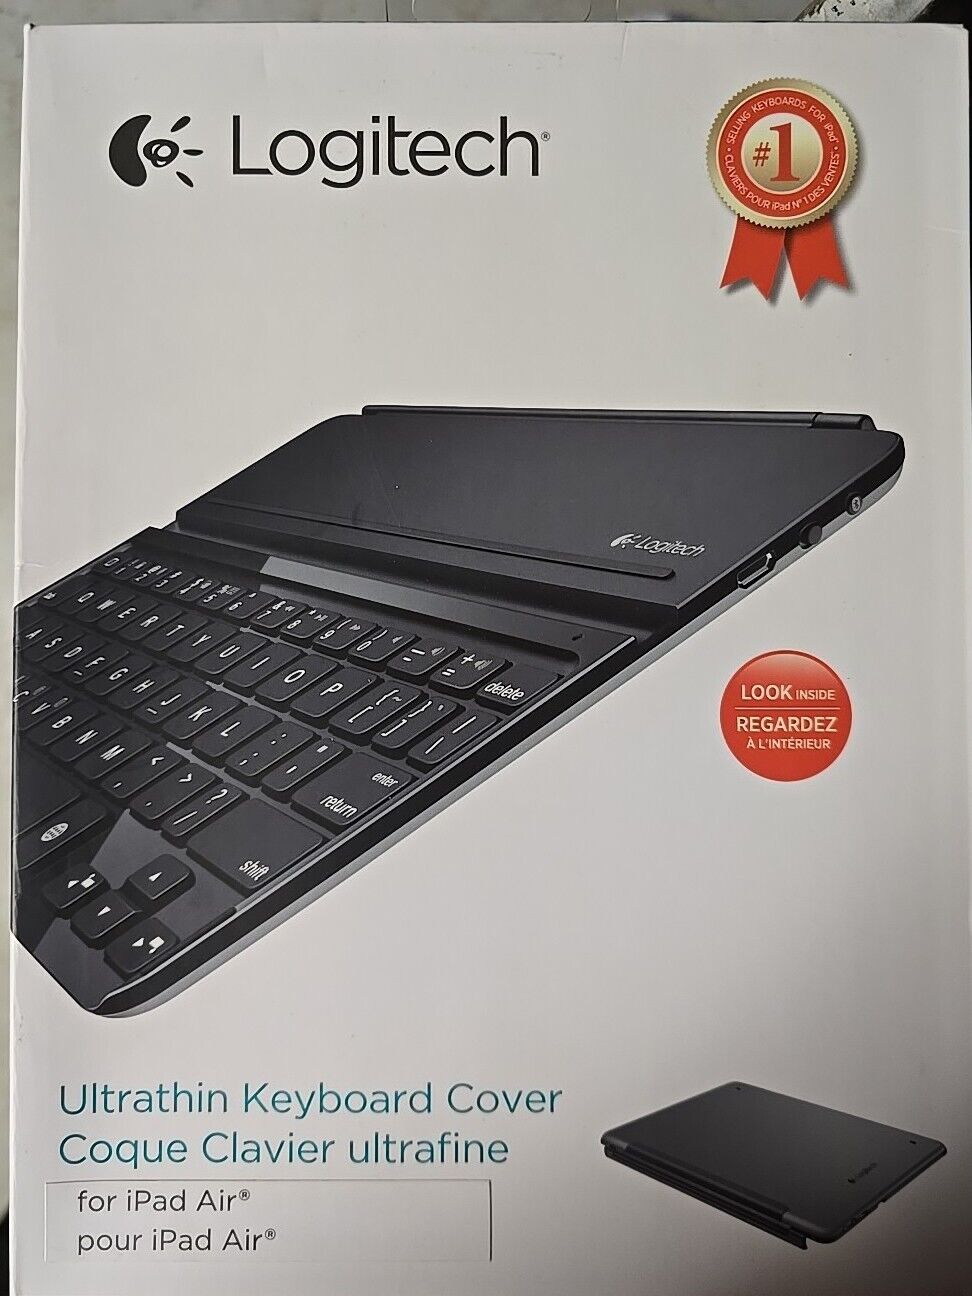 Logitech Wireless Bluetooth Ultrathin Keyboard Cover i5 for iPad Air NIB